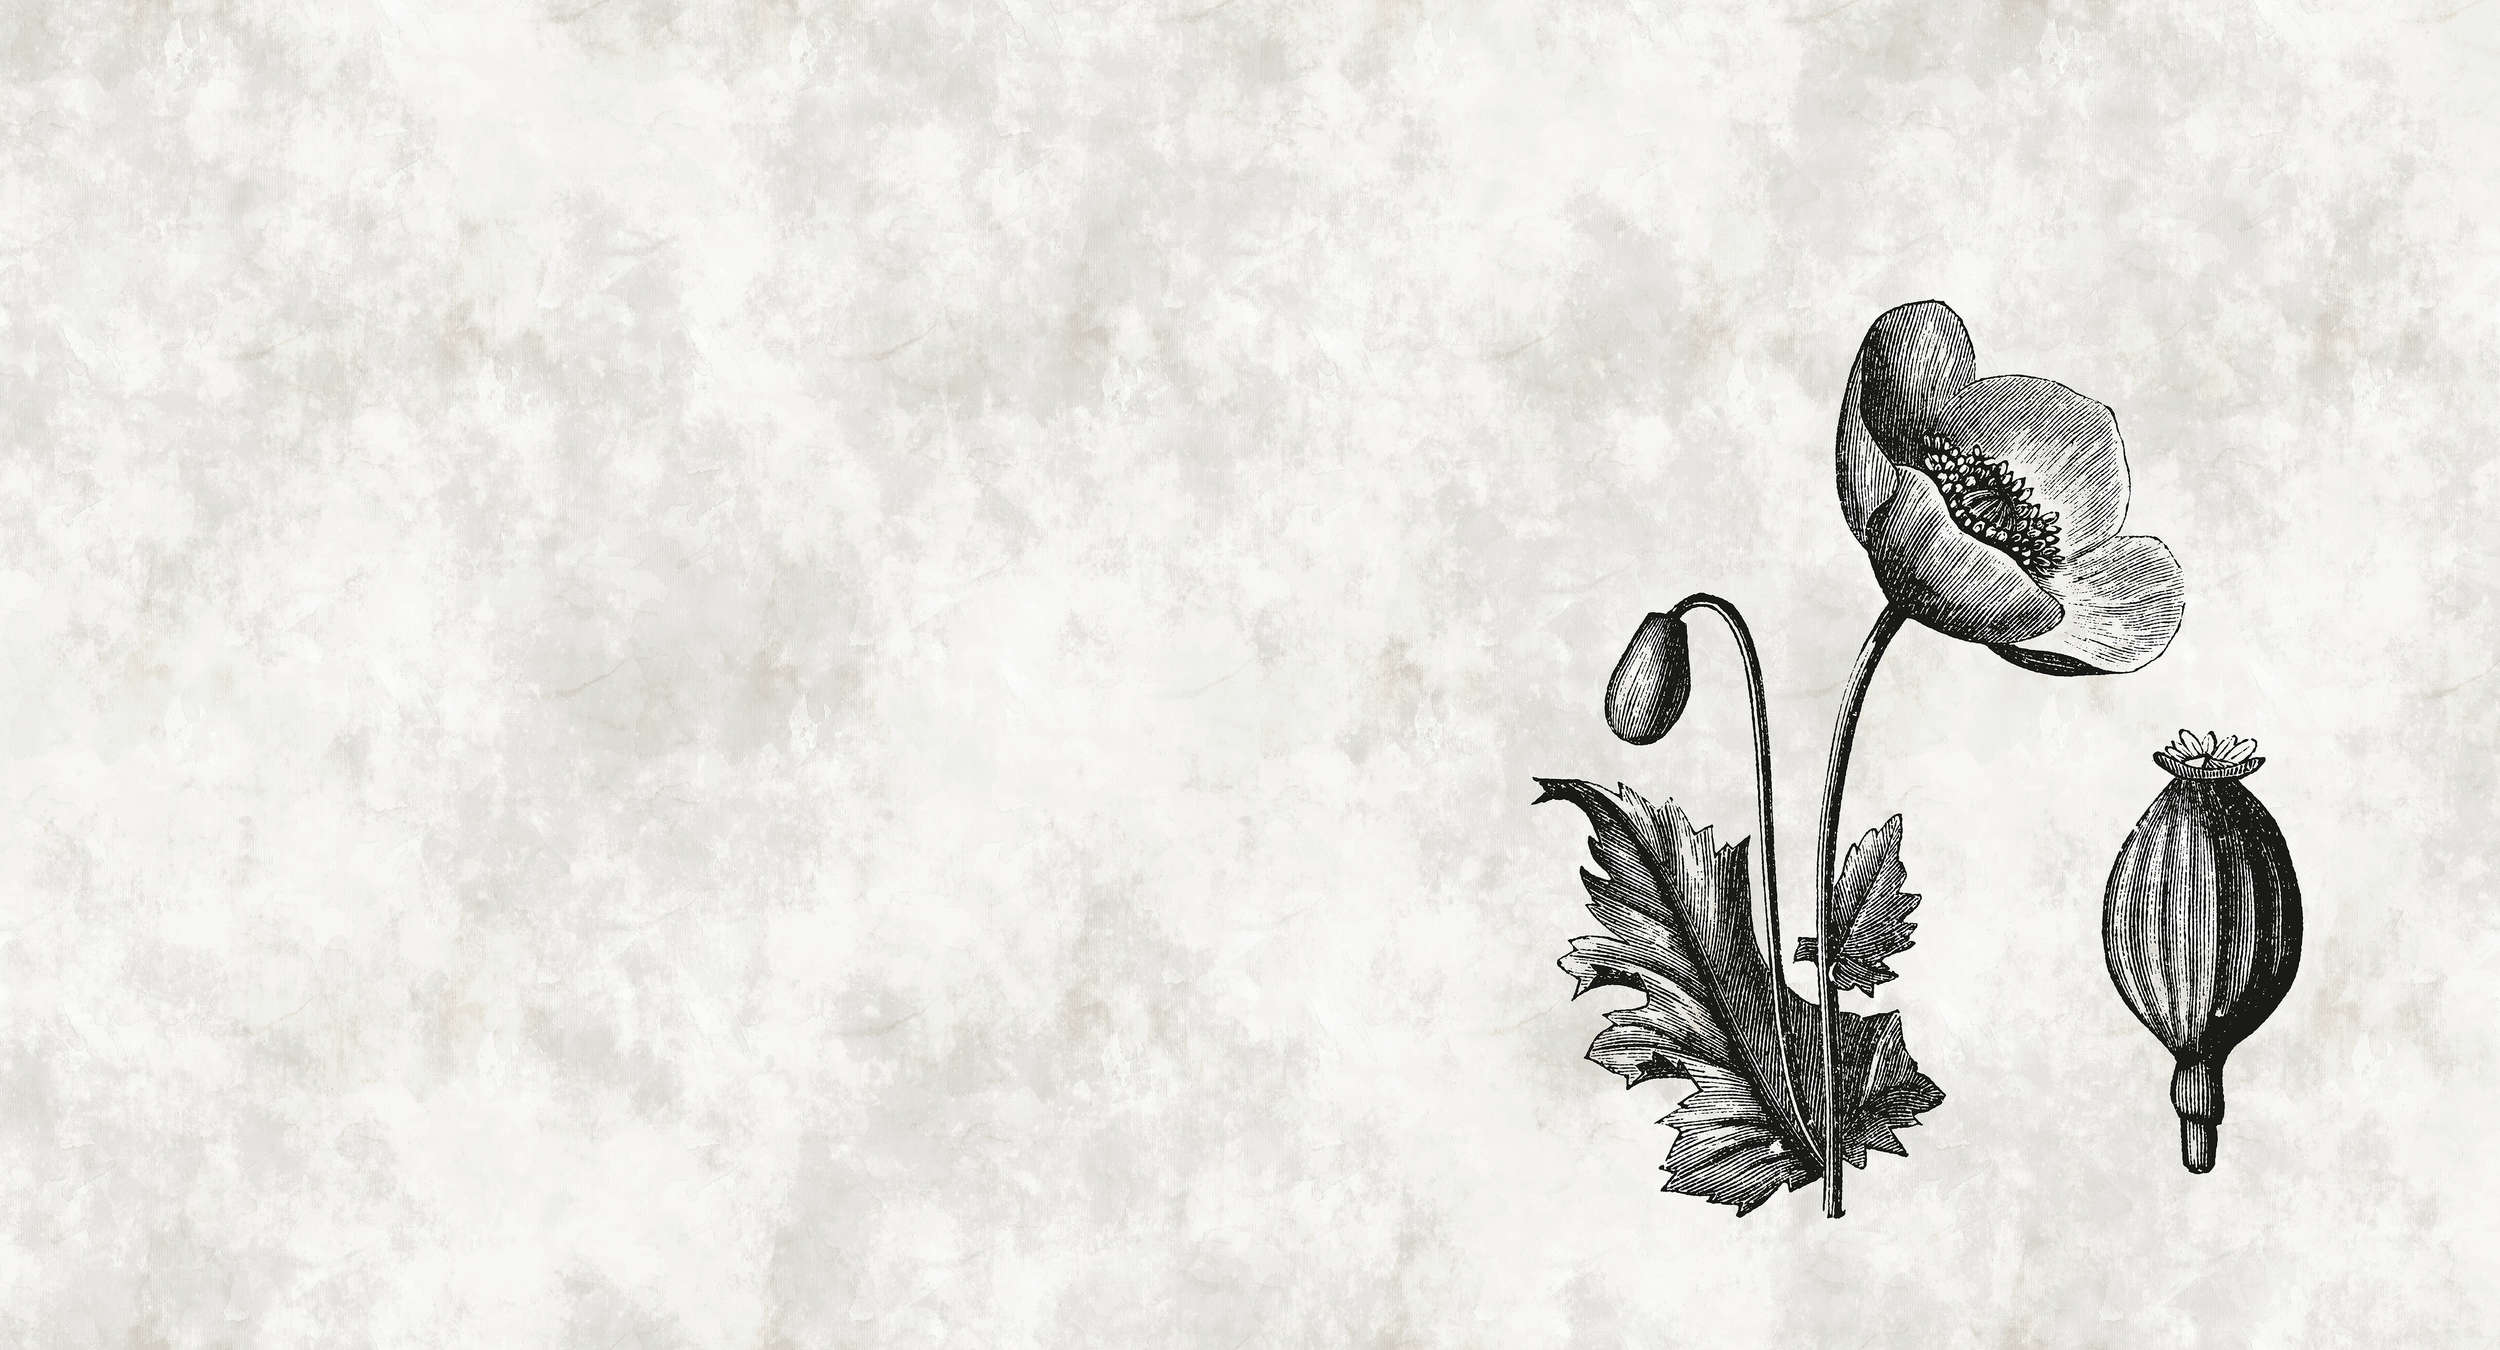             Papel pintado de estilo botánico con flores de amapola en blanco y negro
        